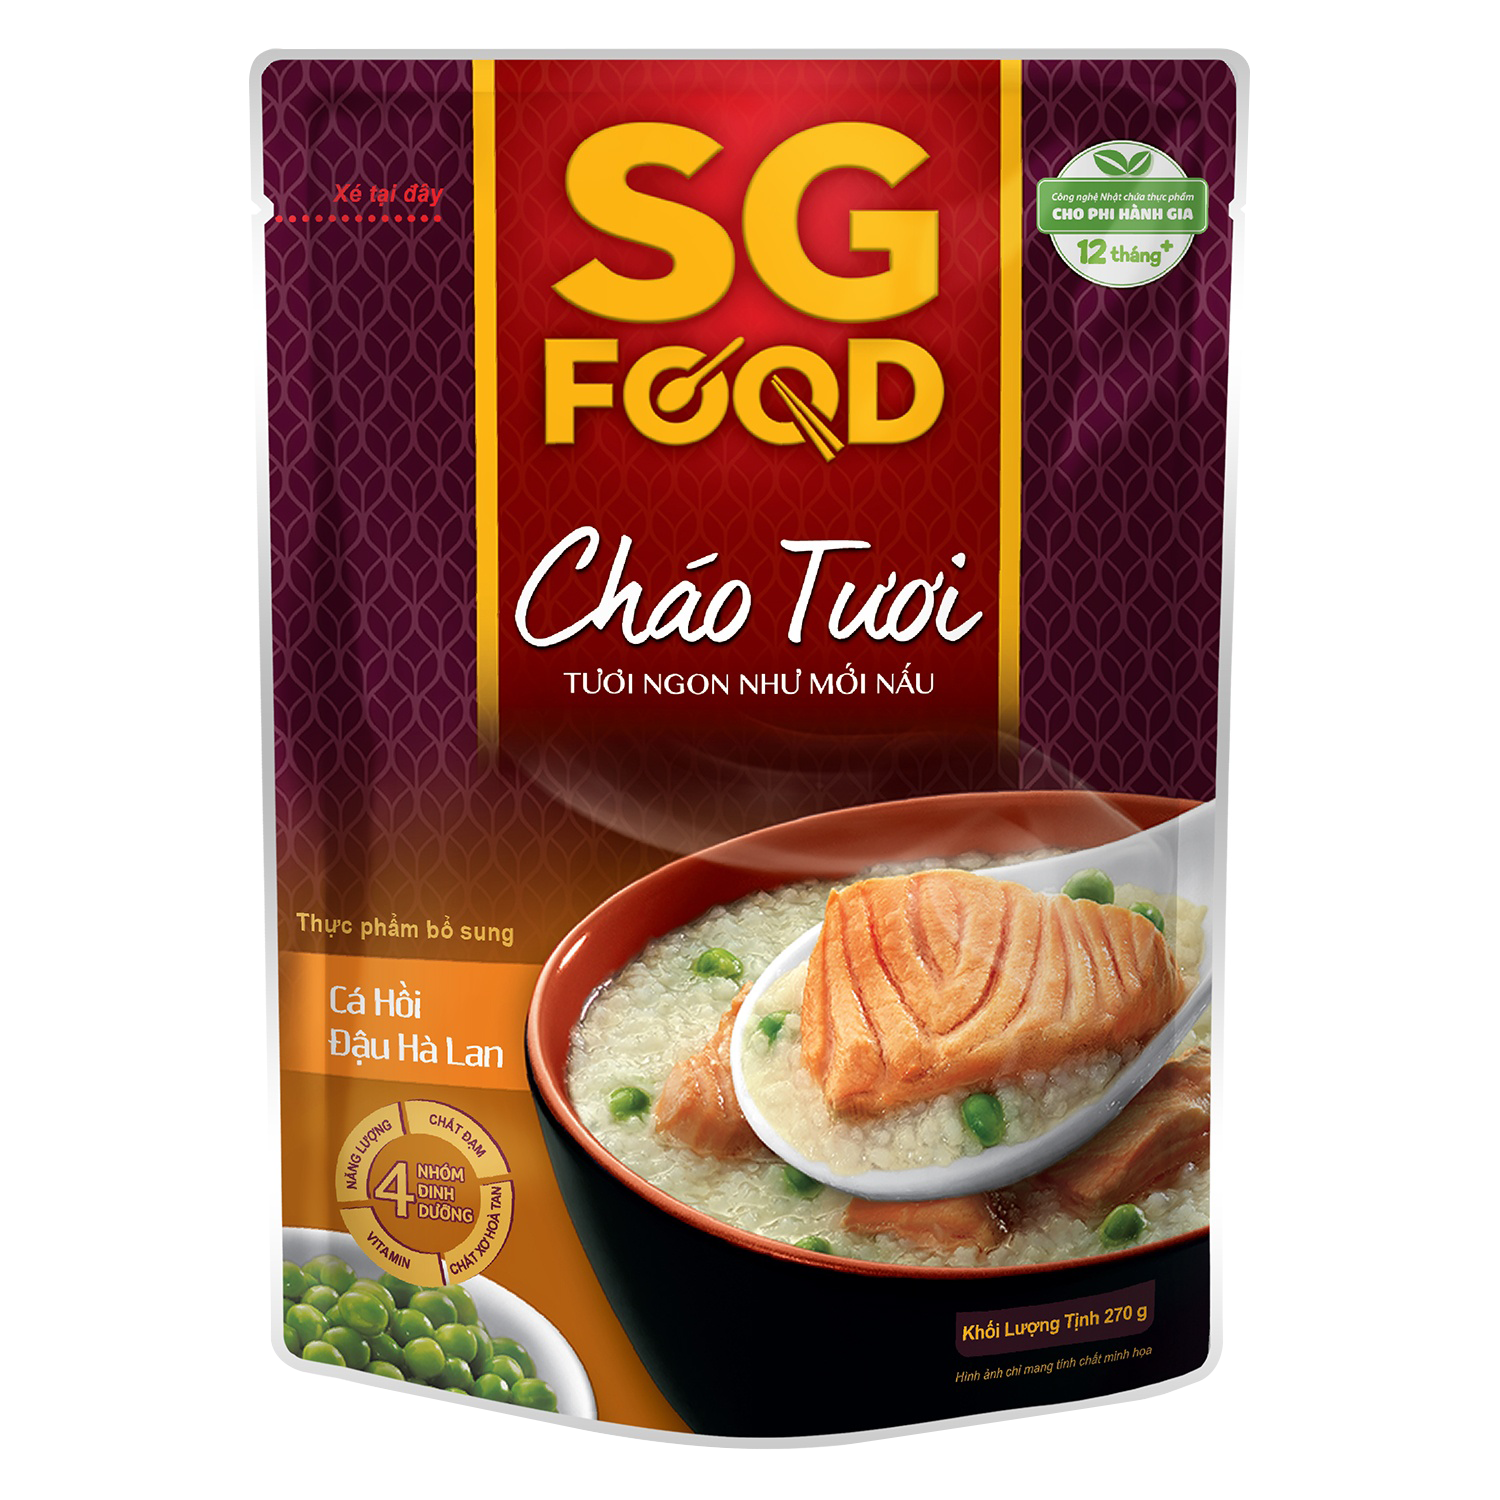 Cháo Sài Gòn Food